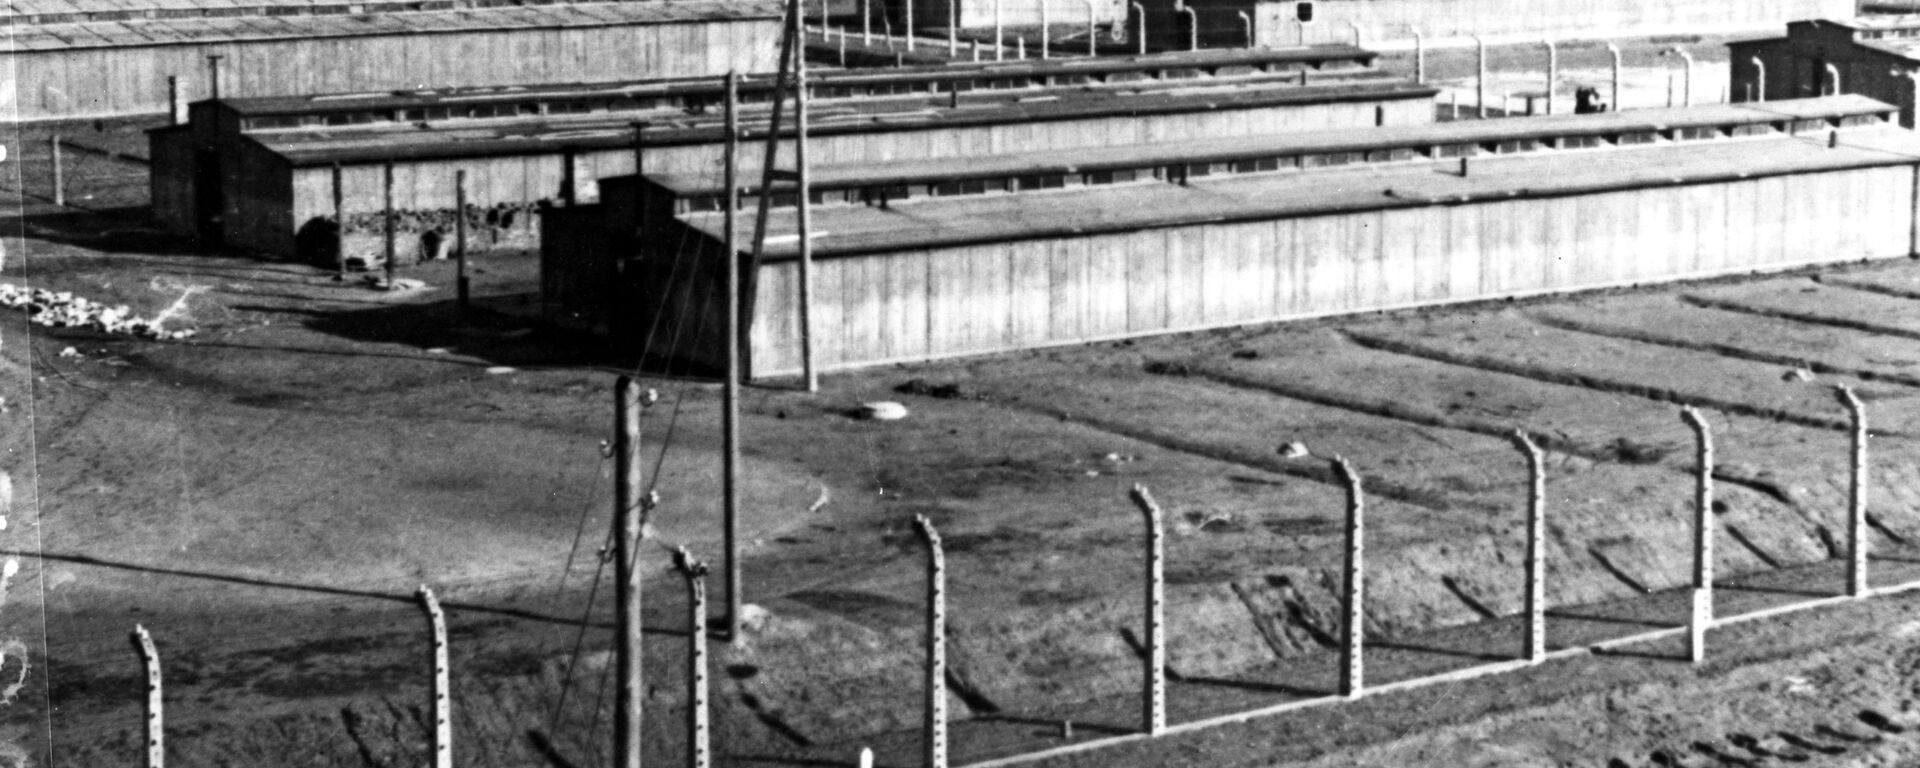 الحرب العالمية الثانية 1939 - 1945. ثكنات معسكر اعتقال أوشفيتز في ينايرم كانون الثاني 1945. يعد معسكر أوشفيتز أكبر معسكرات الإبادة النازية وأكثرها بقاء لفترة زمنية طويلة. لذا، فقد أصبح أحد الرموز الرئيسية للمحرقة (الهولوكوست). وفقًا لوثائق محكمة نورمبرغ، قُتل 2.8 مليون شخص في المعسكر خلال فترة 1941-1945، 90٪ منهم كانوا من اليهود. - سبوتنيك عربي, 1920, 21.01.2021